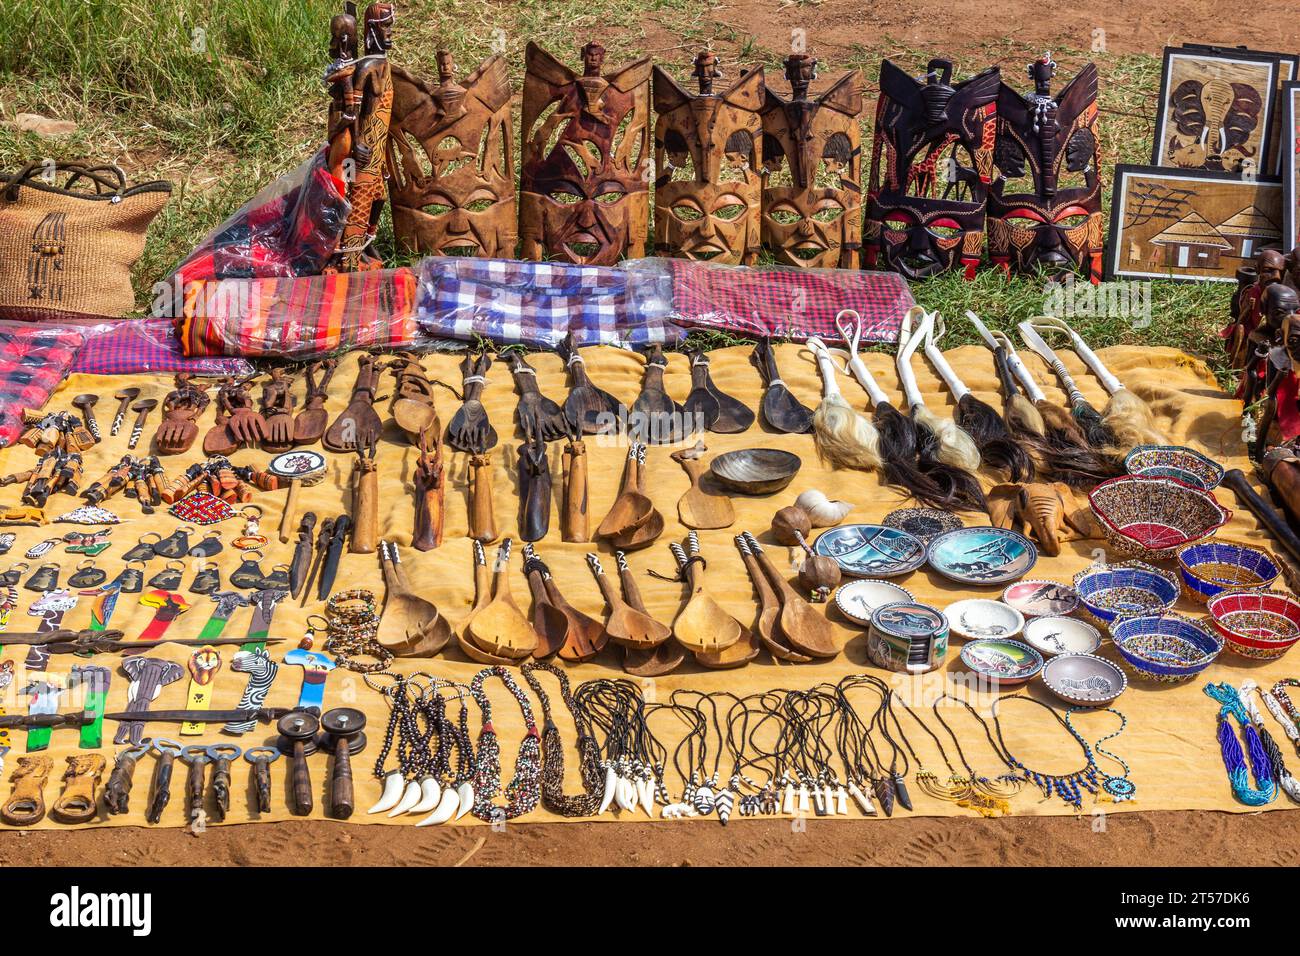 MASAI MARA, KENYA - 19 FÉVRIER 2020 : souvenirs fabriqués par Masai à vendre dans la réserve nationale Masai Mara, Kenya Banque D'Images